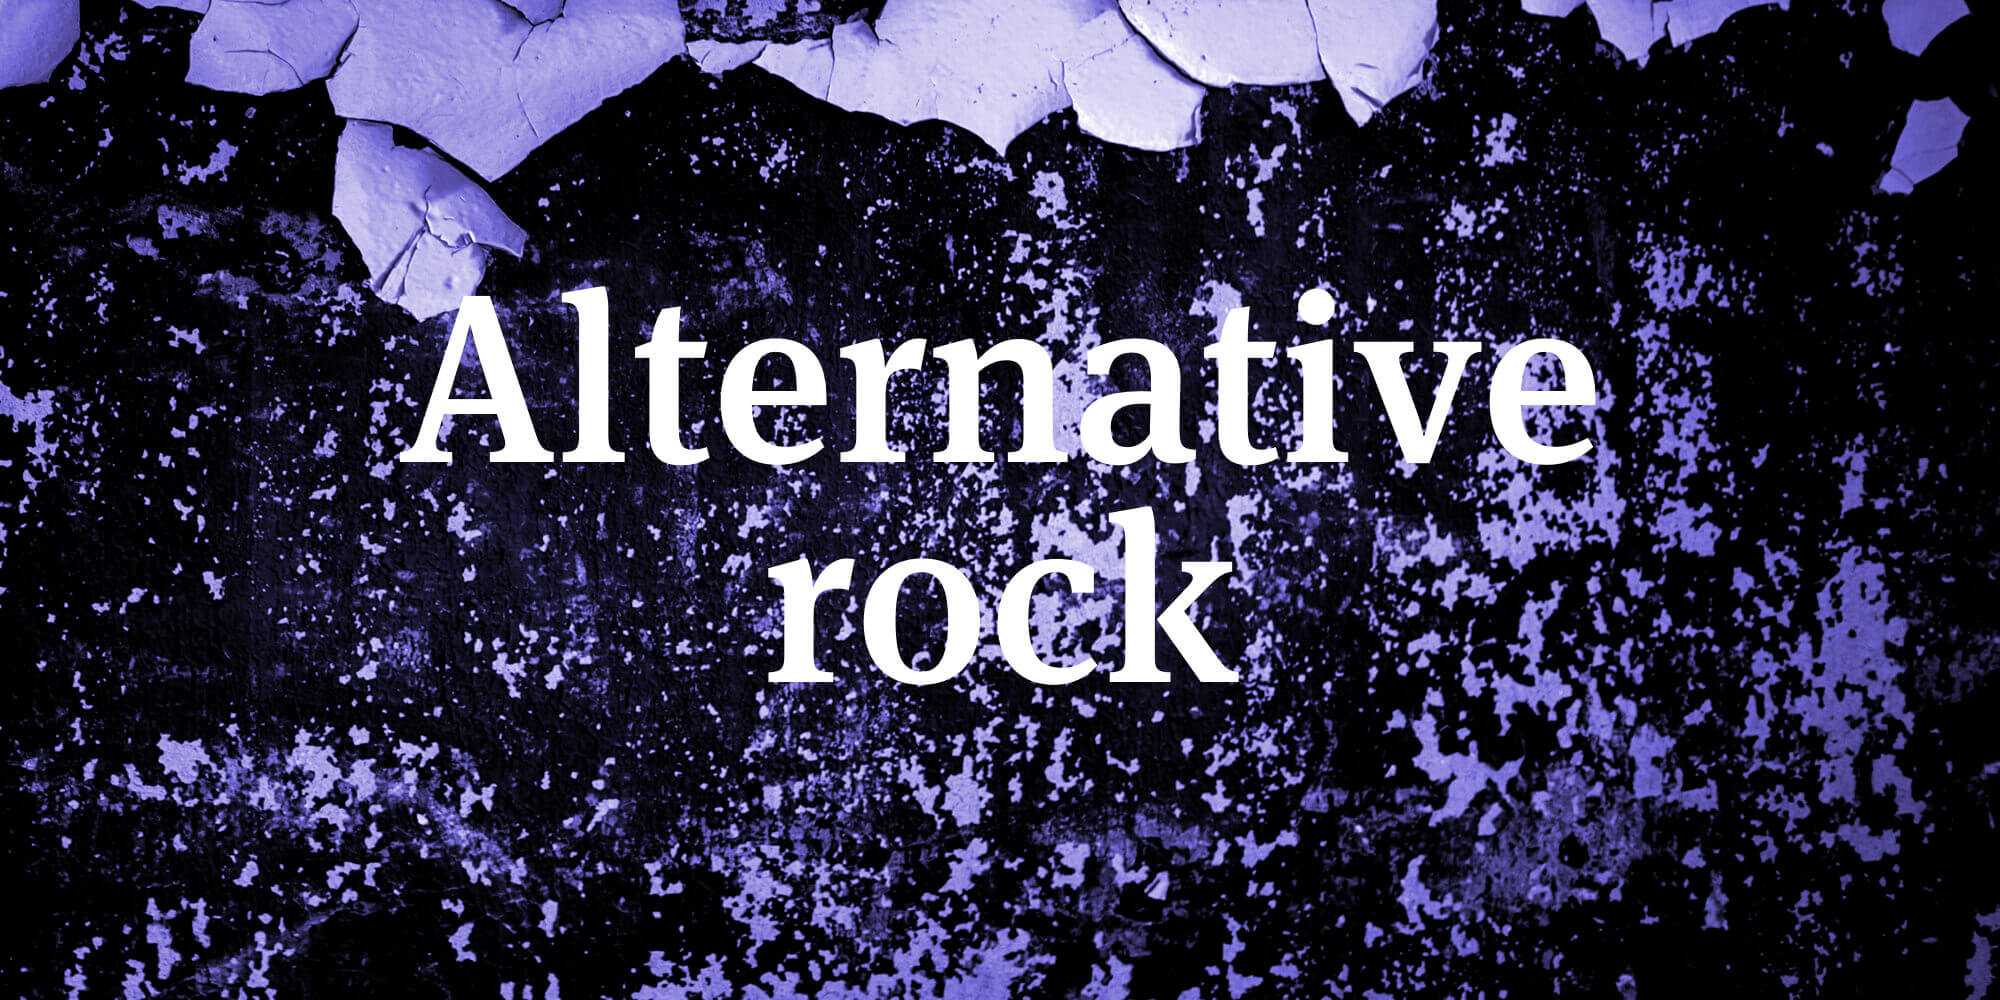 Альтернативный рок лучшее